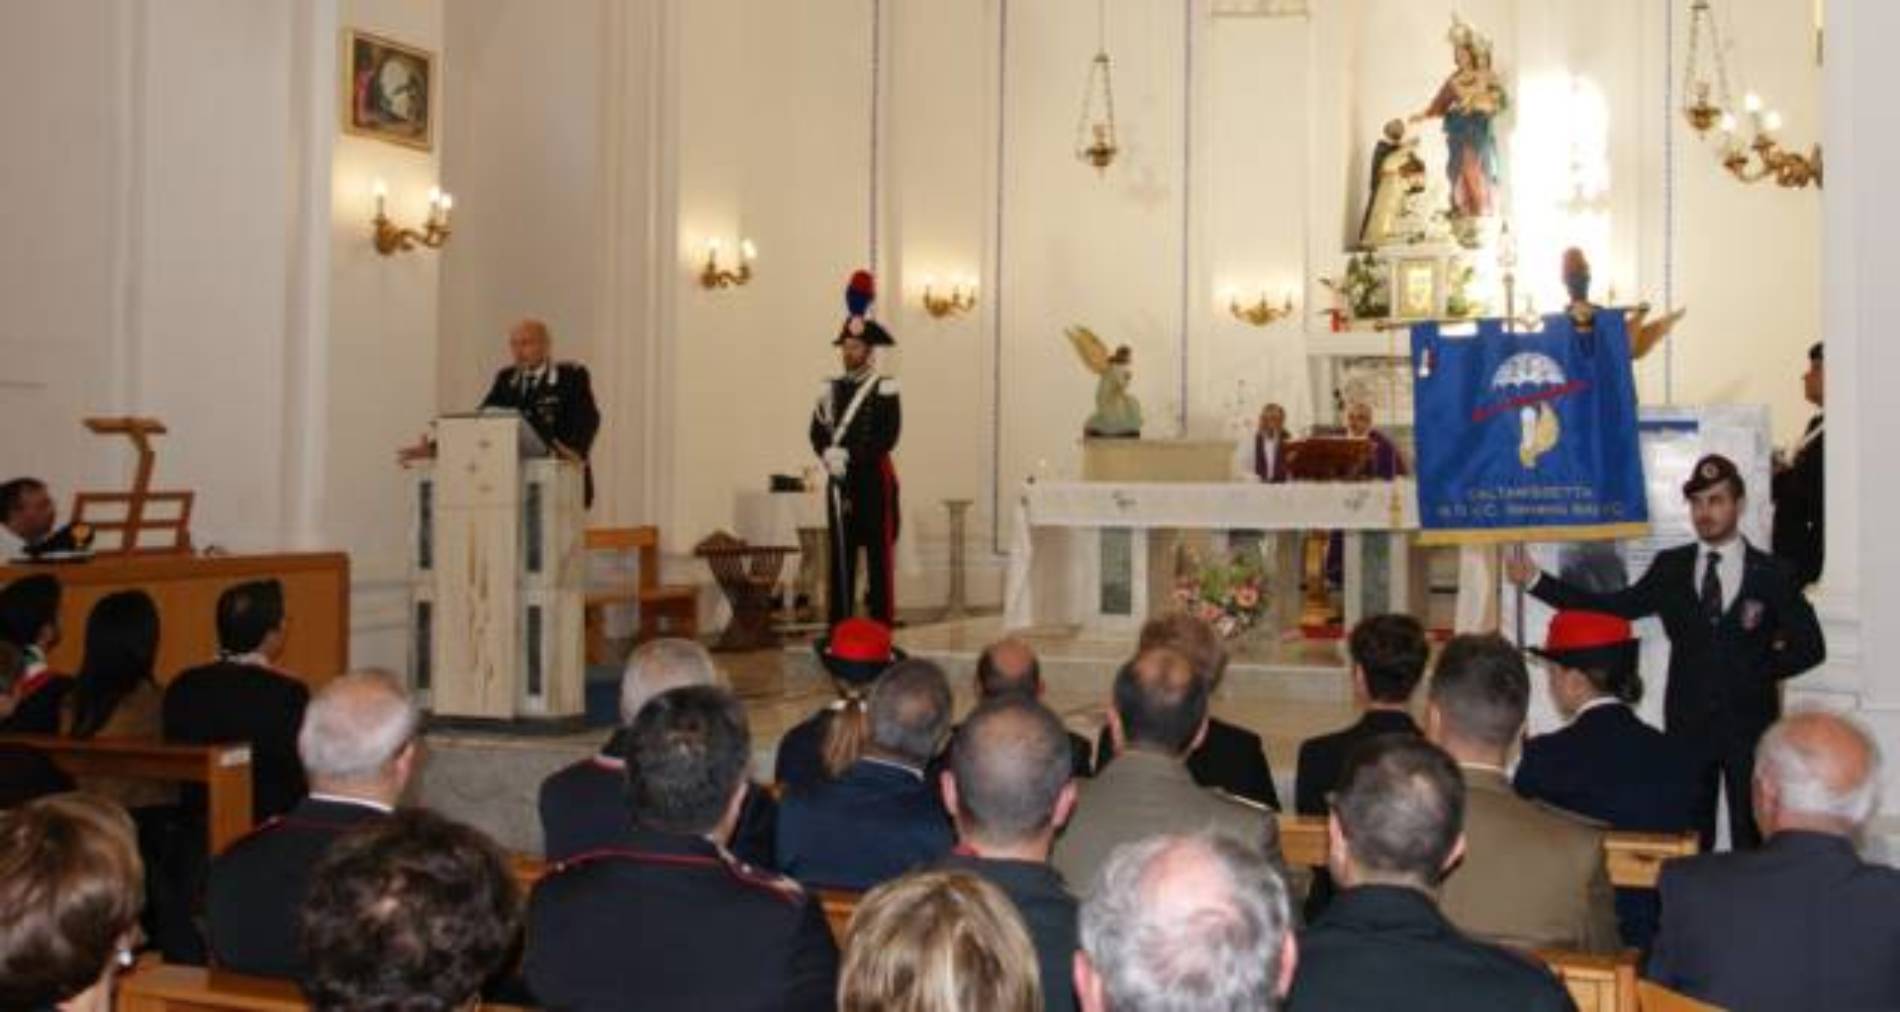 MONTEDORO. Commemorazione per il decimo anniversario dalla scomparsa dell’Appuntato dei carabinieri M.O.V.C. “alla memoria” Giovanni Salvo.